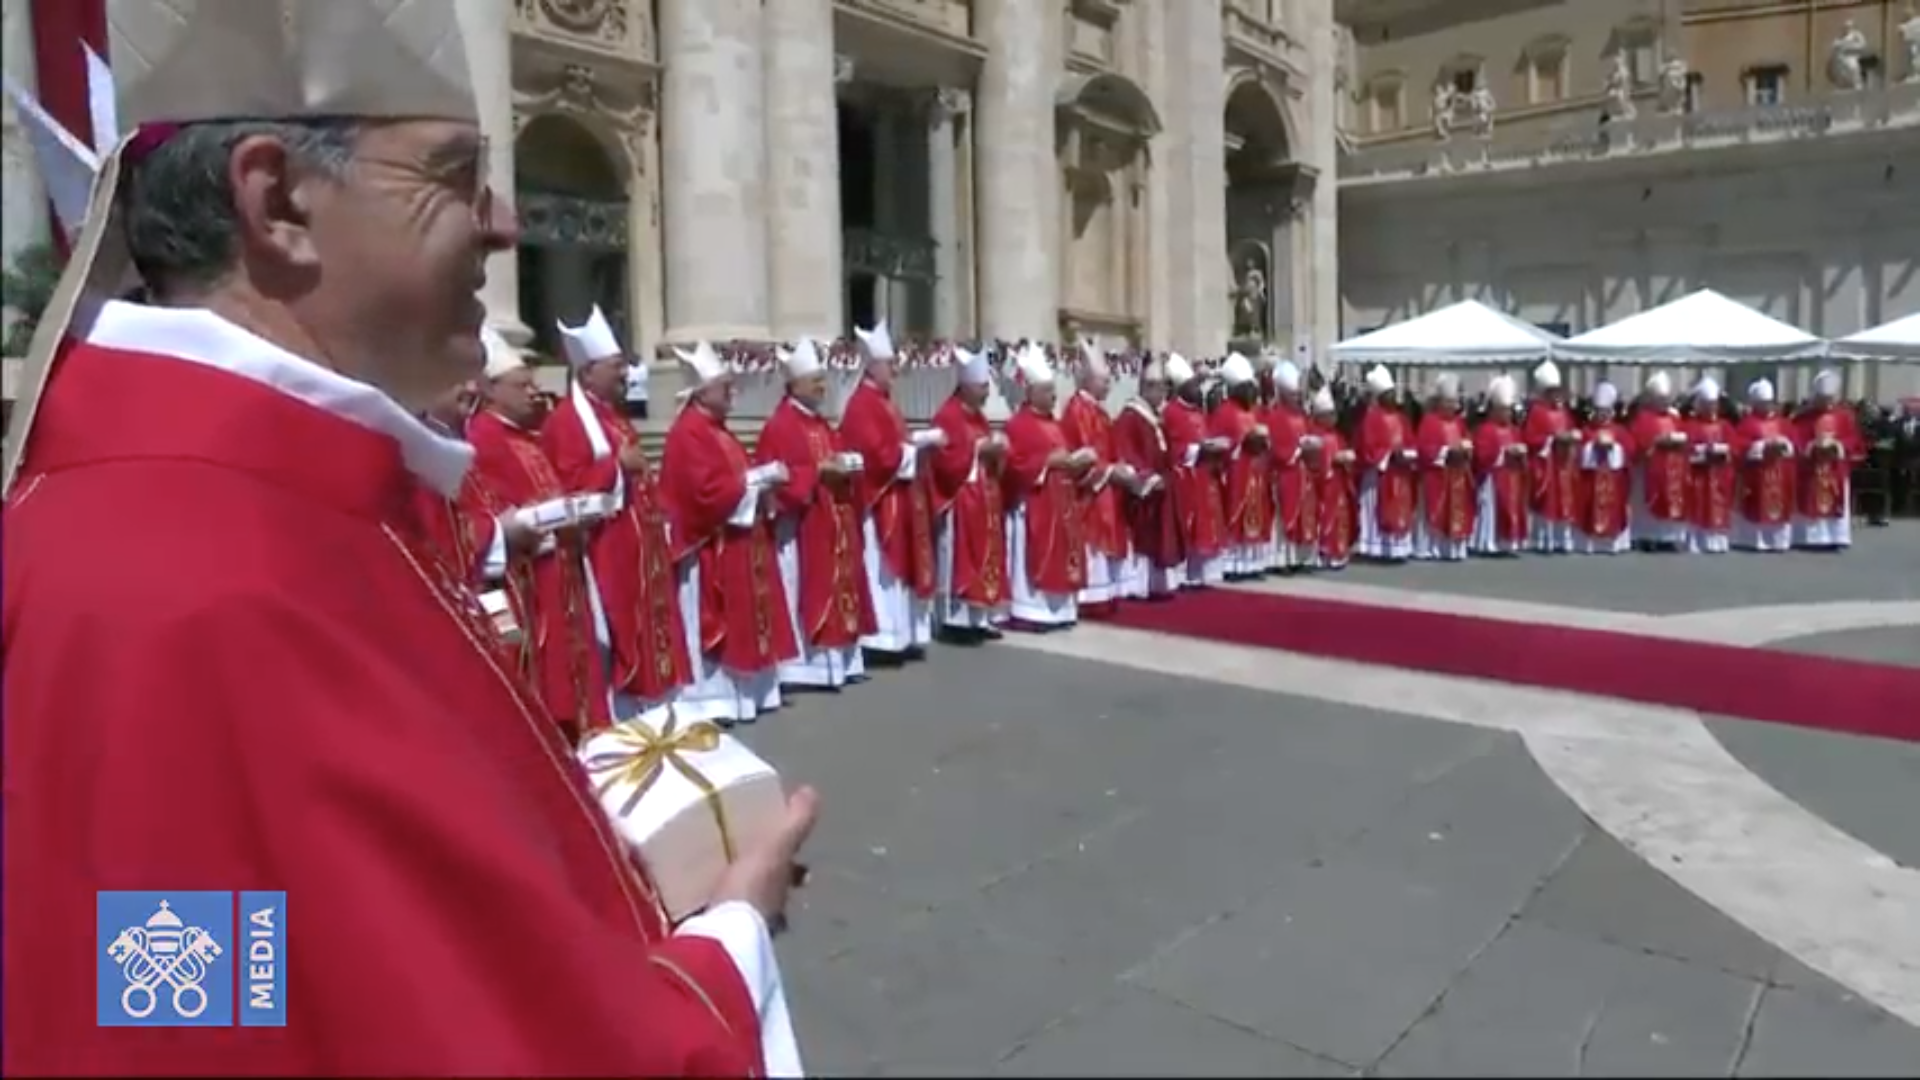 26 archevêques reçoivent le pallium 29/6/2018 capture @Vatican Media